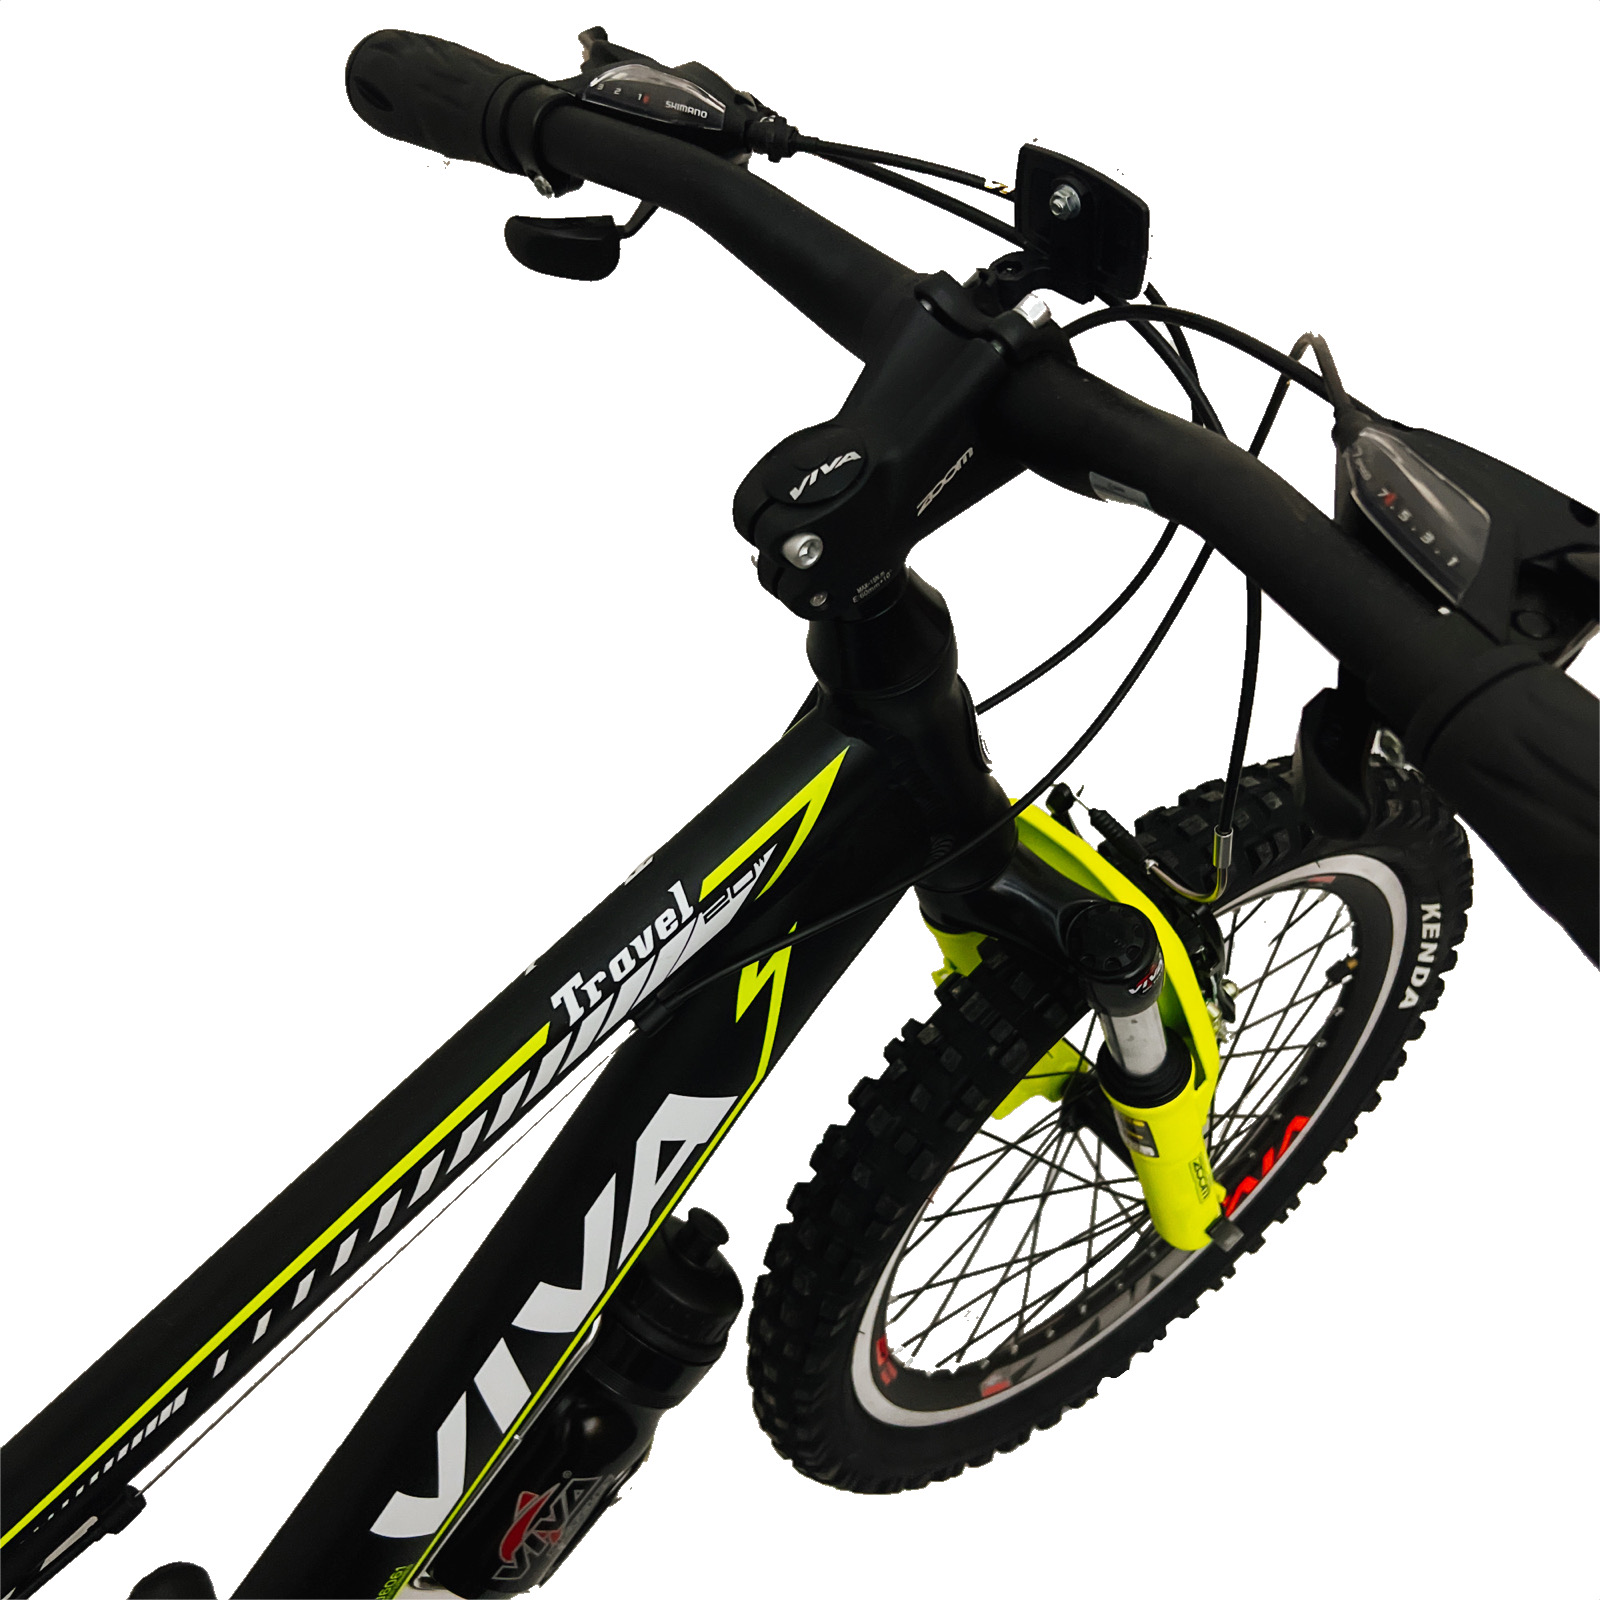 دوچرخه کوهستان ویوا مدل Travel سایز 20